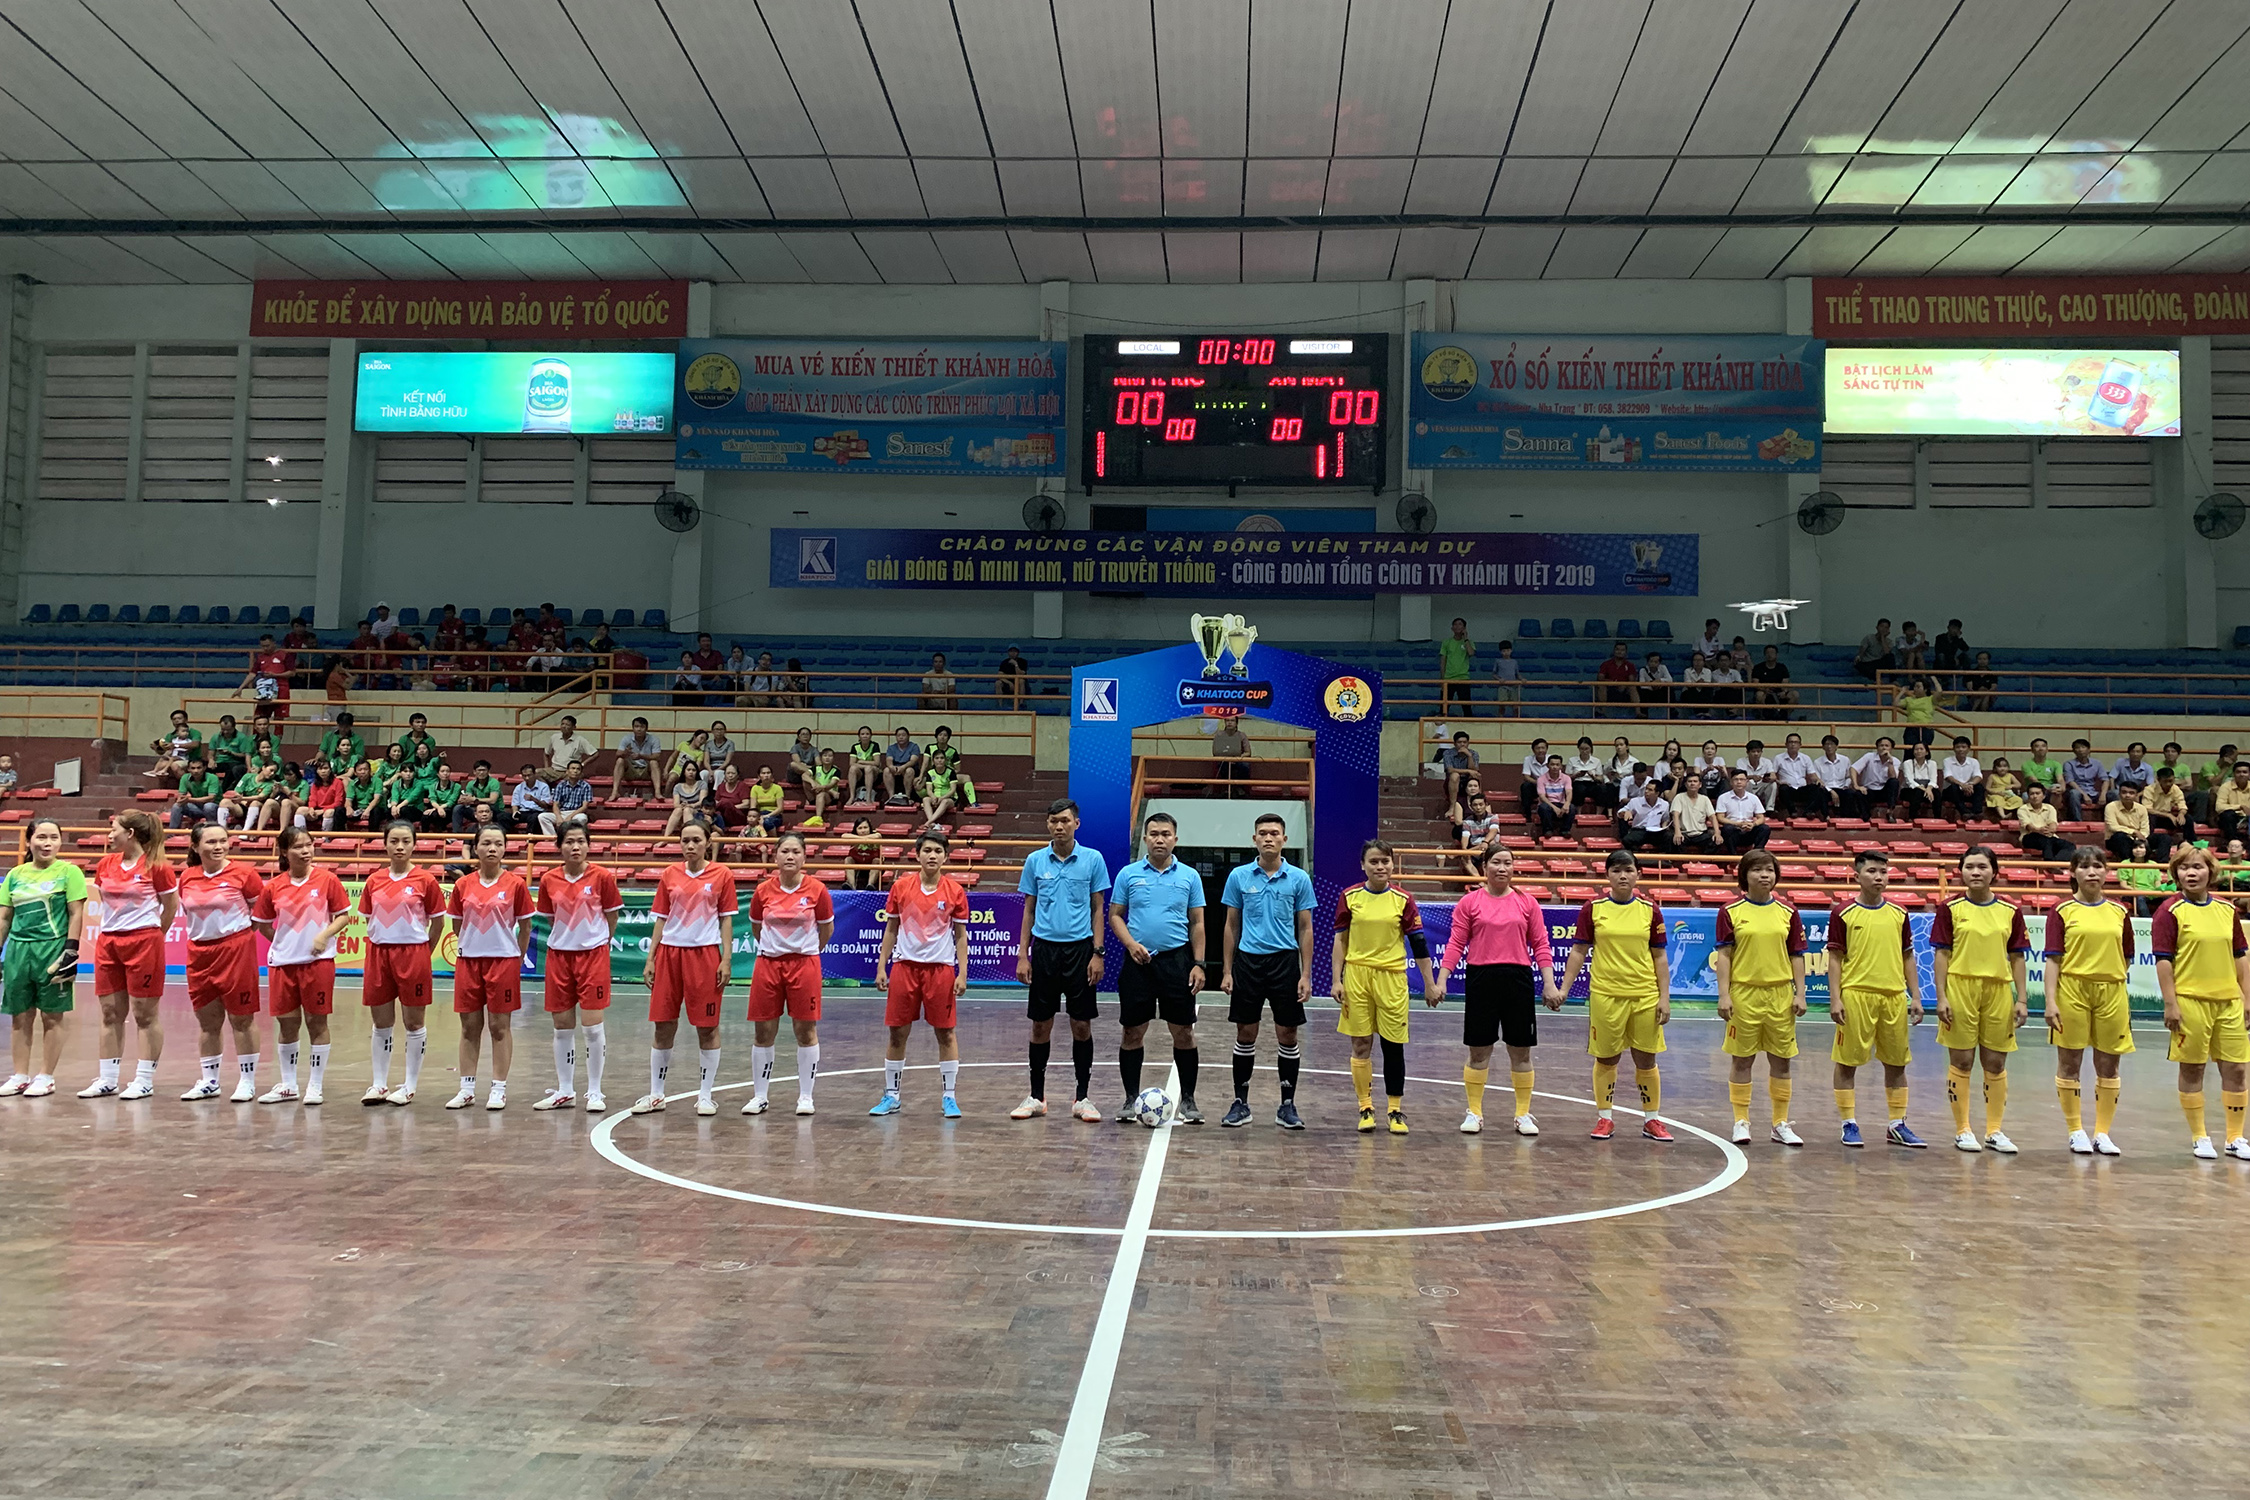 Khatoco cup 2019 - Giải Bóng đá mini nam - nữ truyền thống